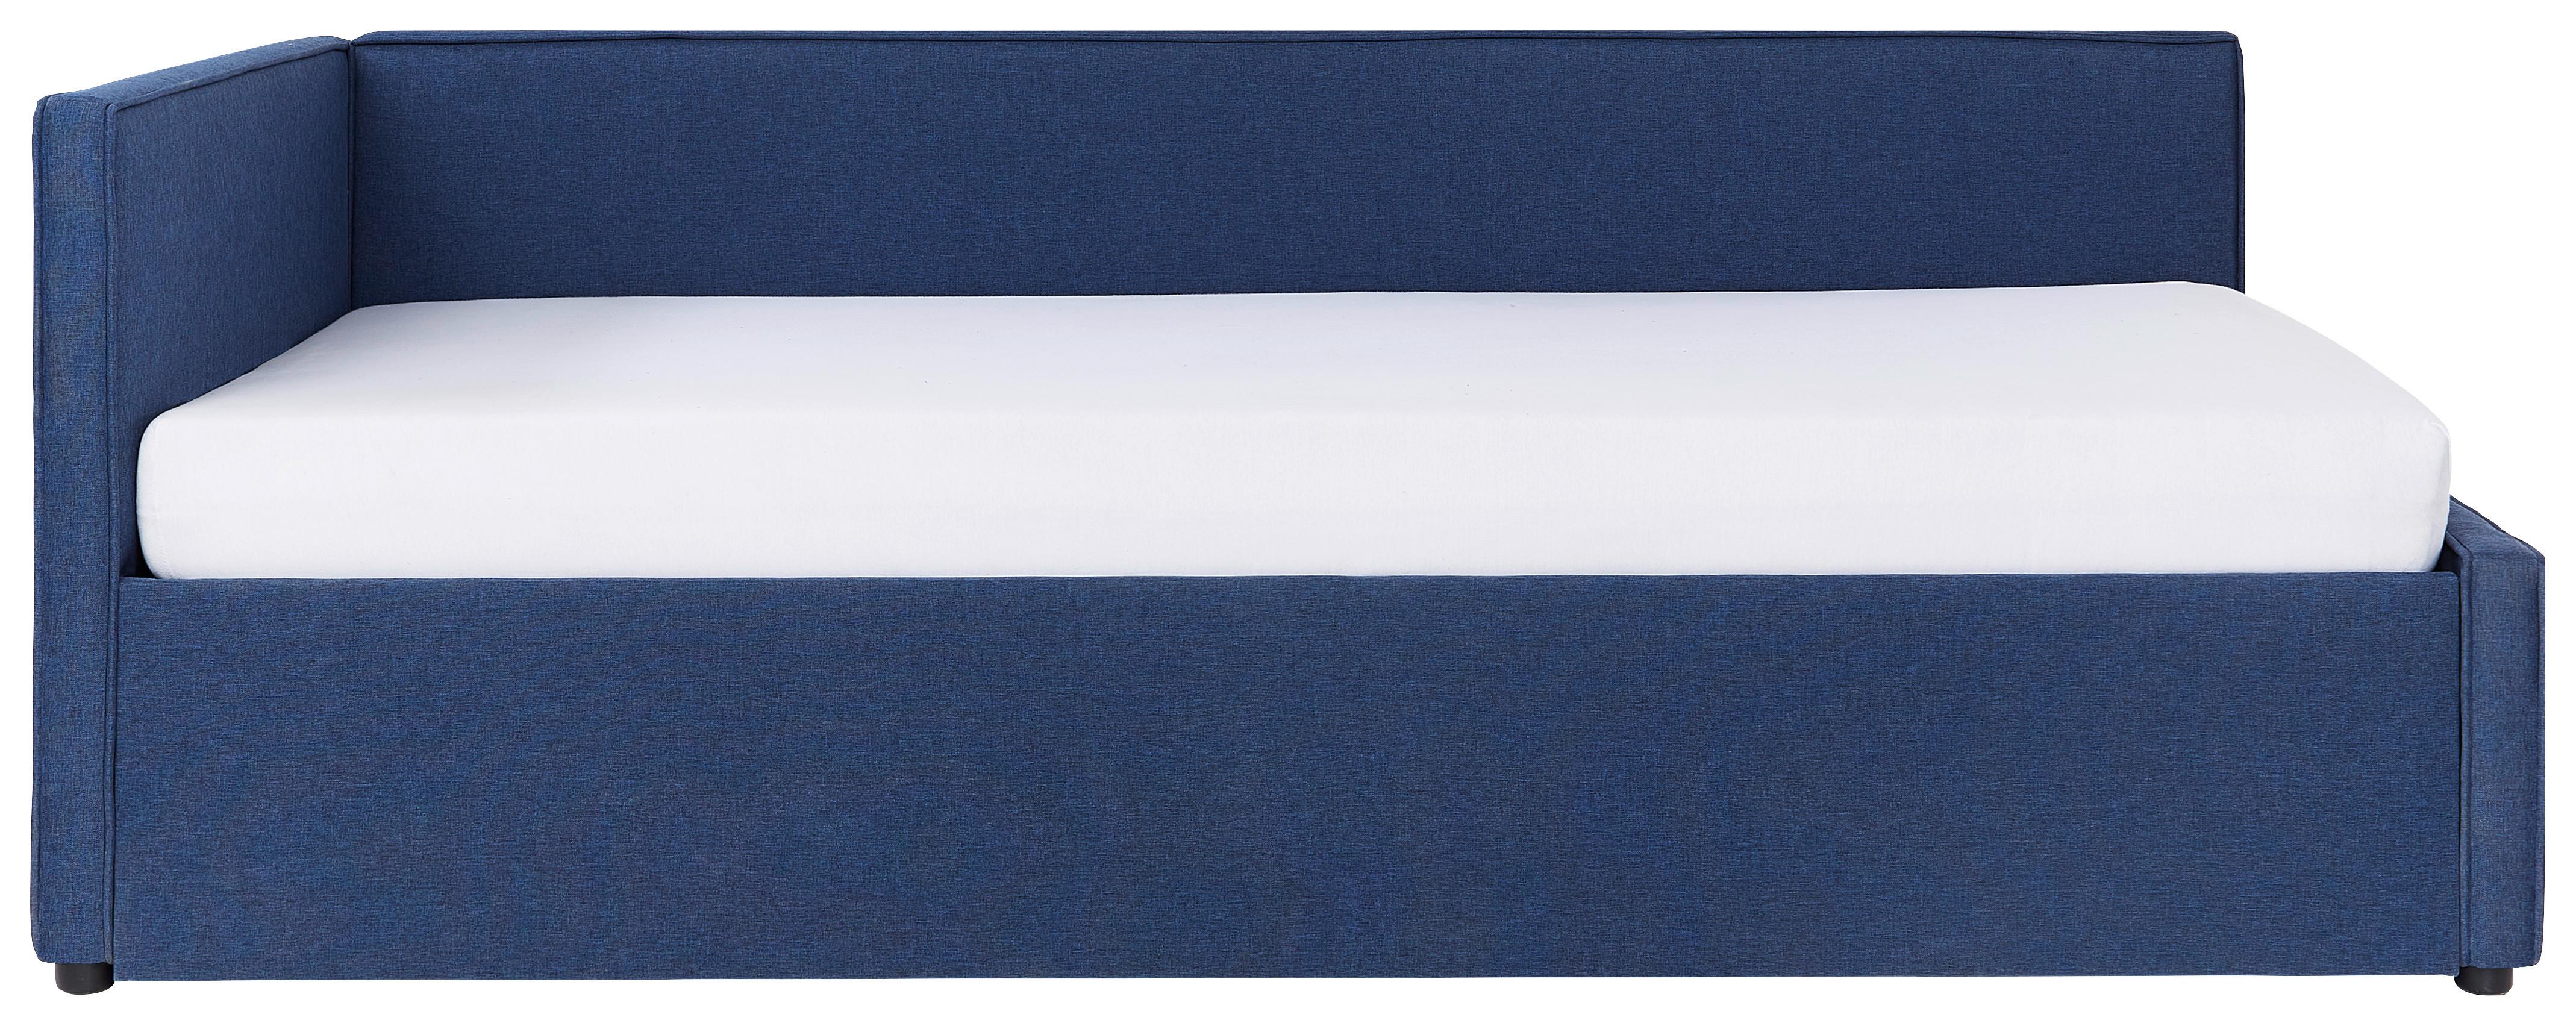 Ausziehbett in Blau ca. 90x200cm - Blau/Schwarz, Konventionell, Holz/Kunststoff (90/200cm) - Modern Living